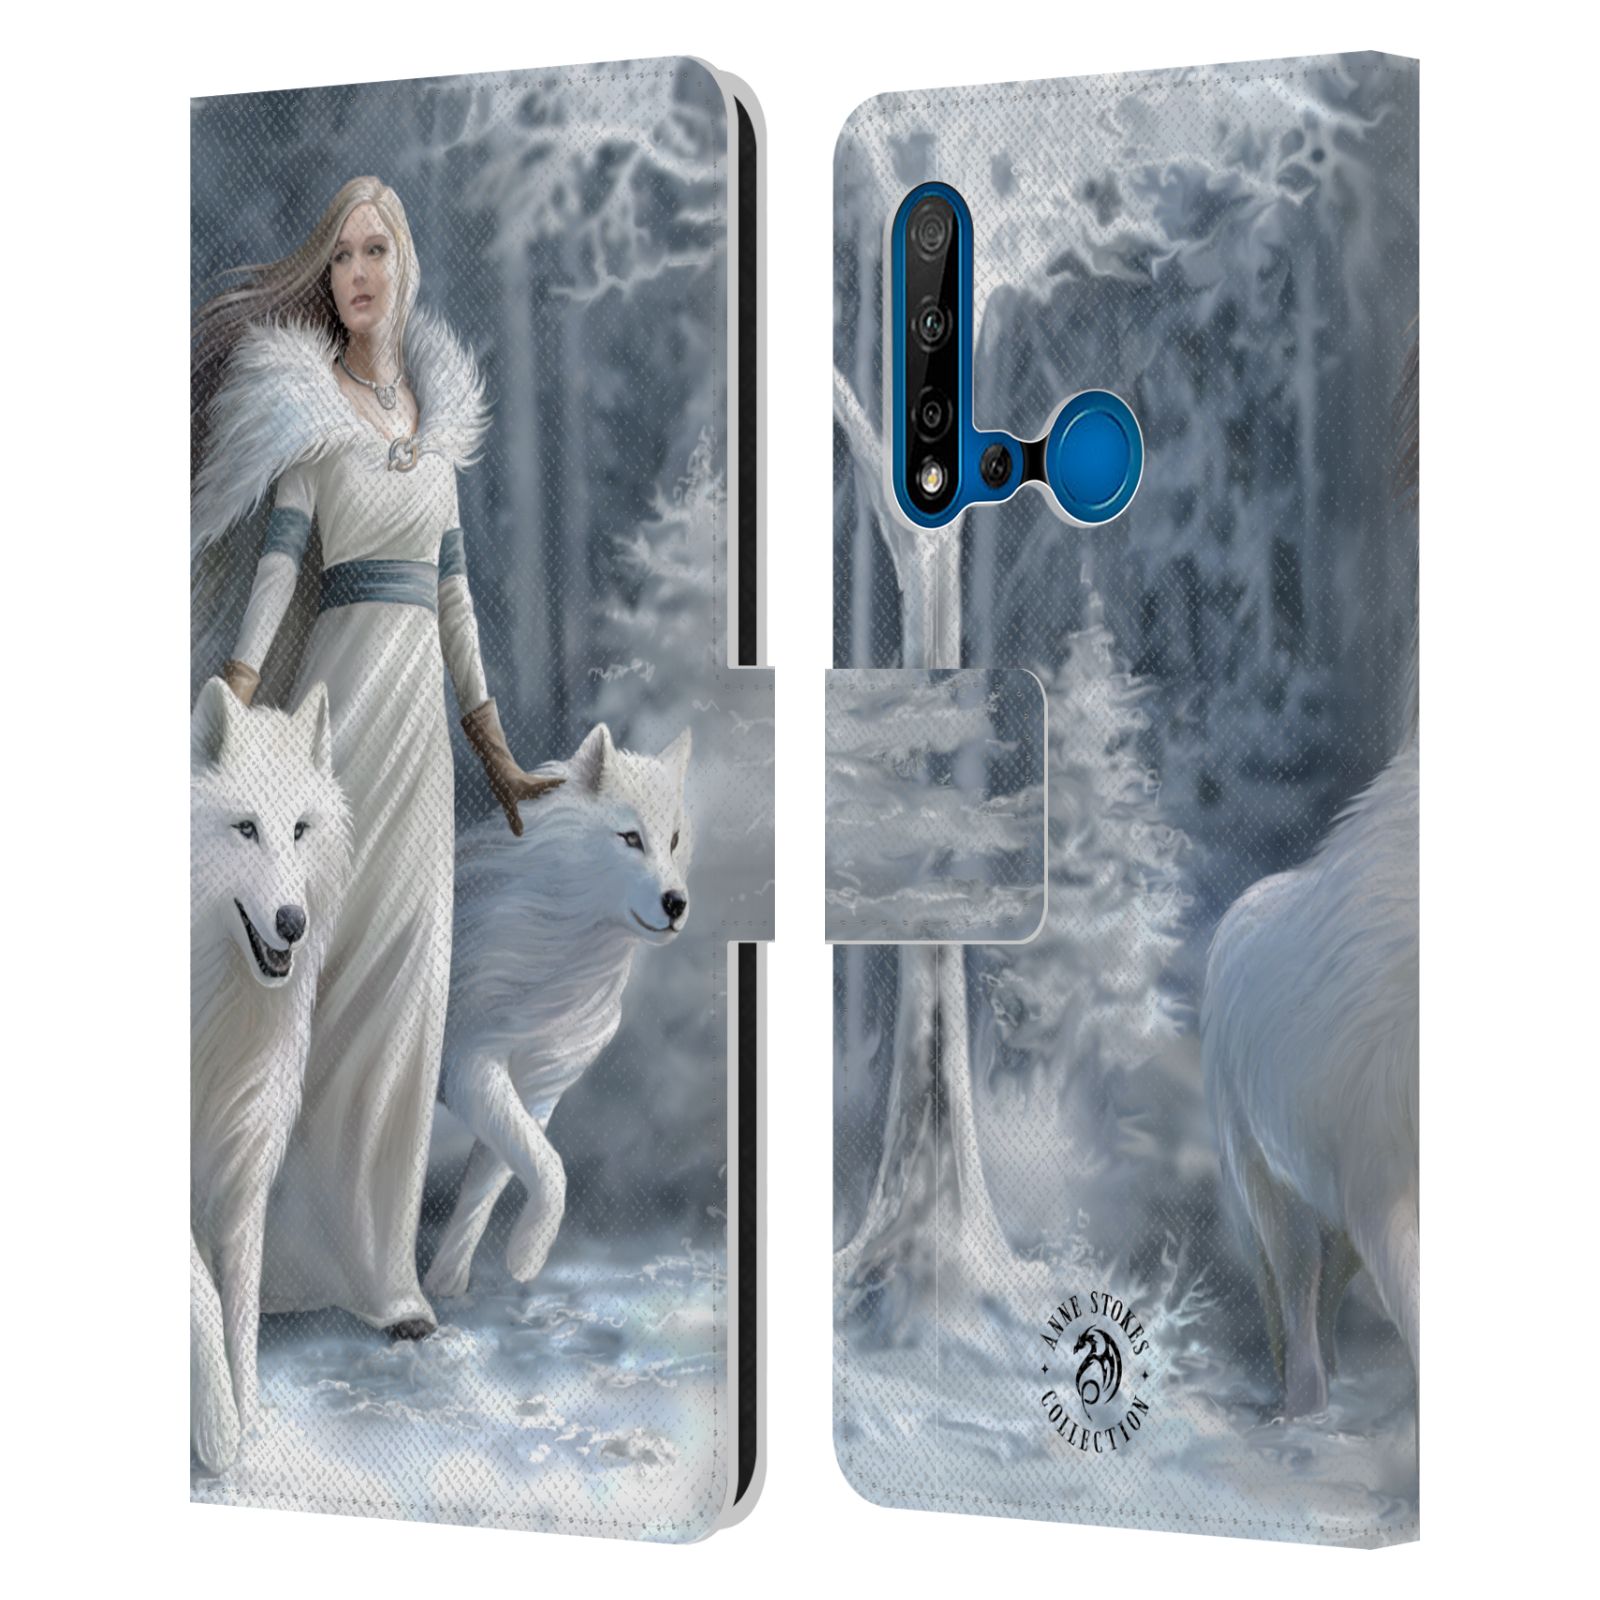 Pouzdro na mobil Huawei P20 LITE 2019 - Head Case - fantasy - vlk zimní stráž